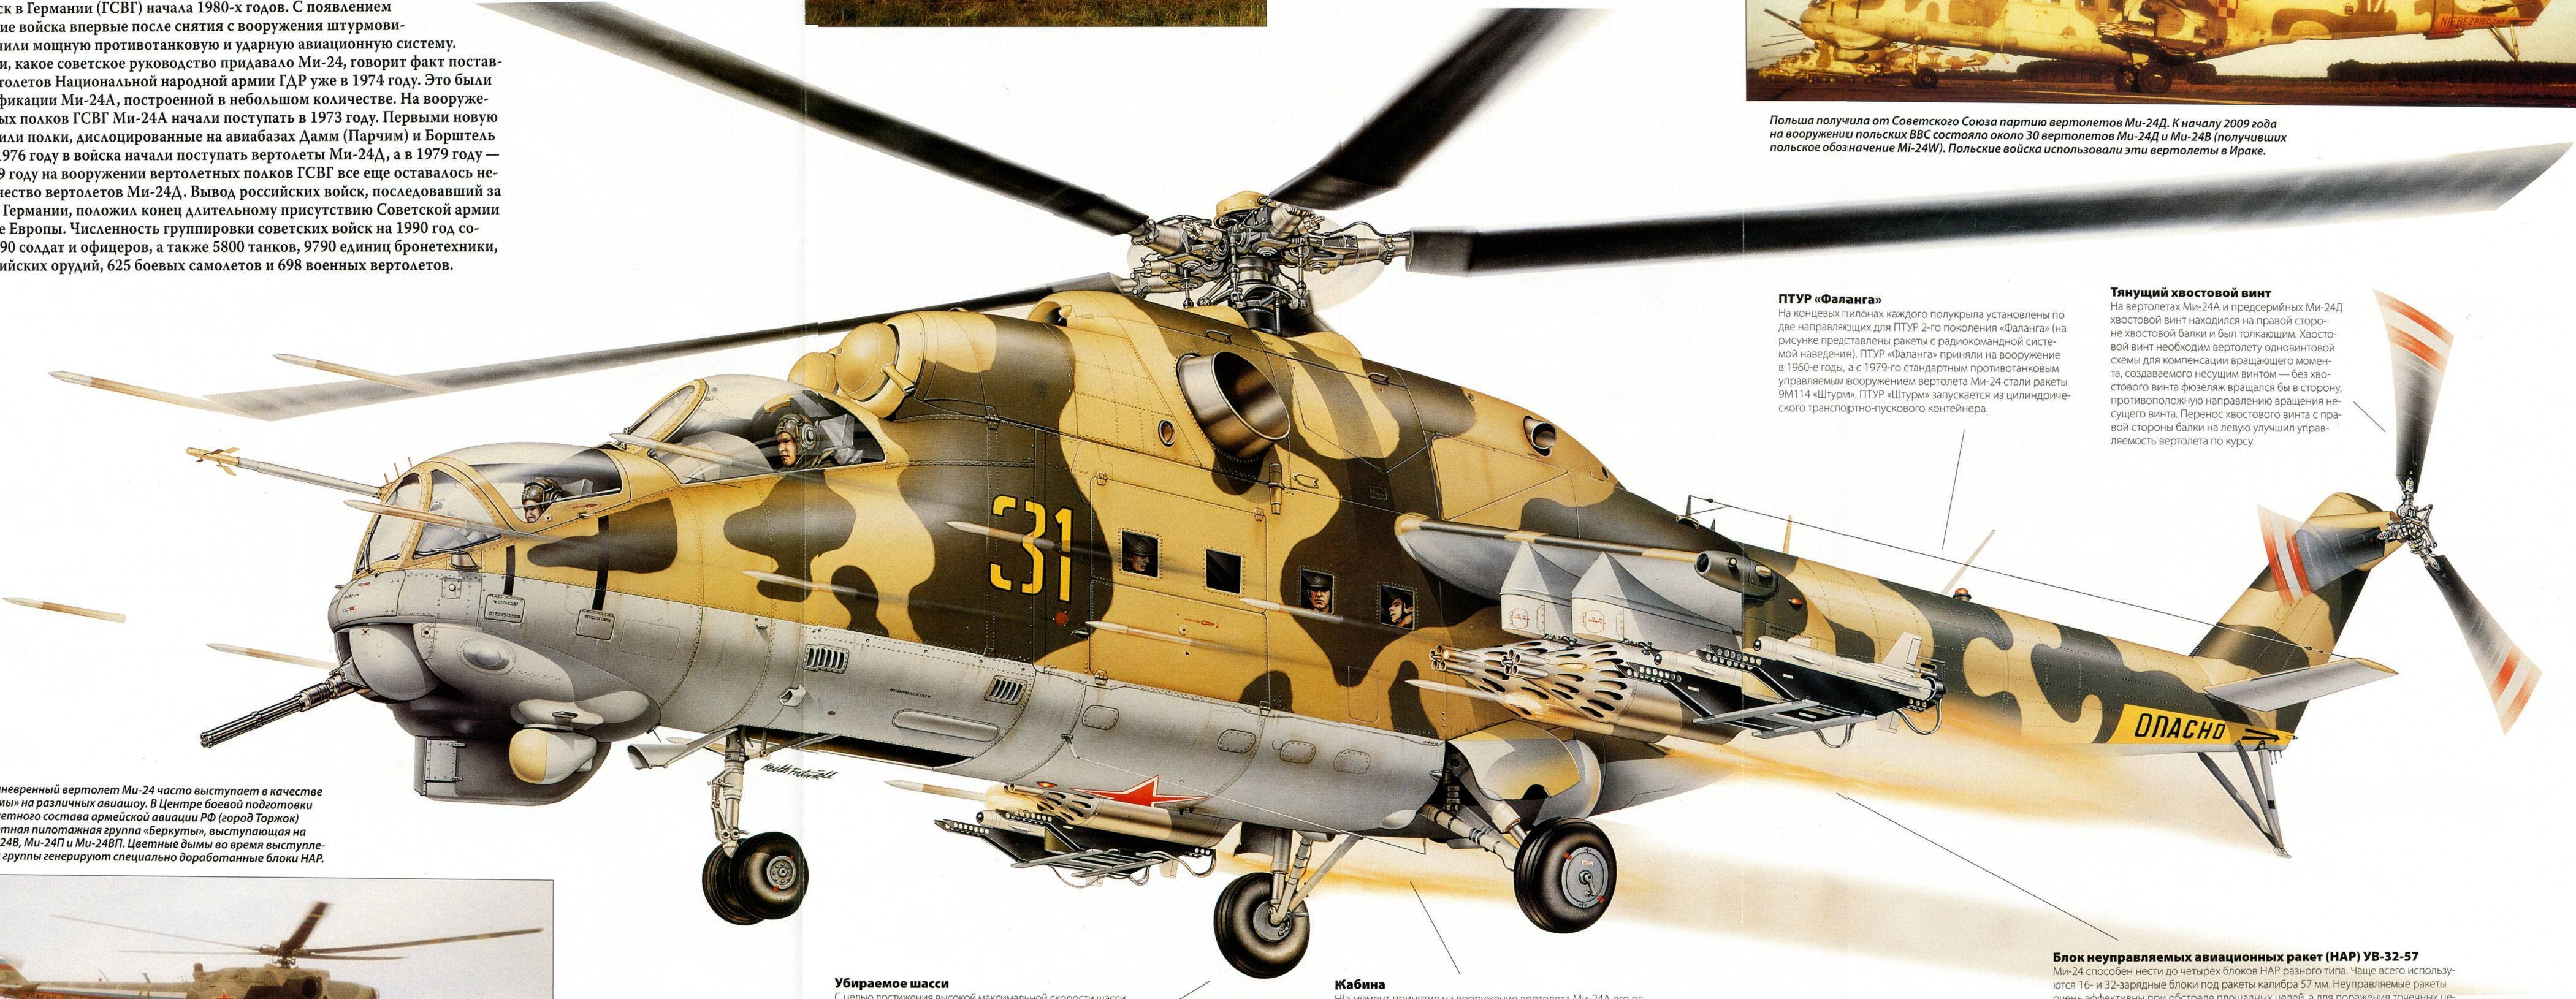 Ми-26 - самый большой в мире вертолёт